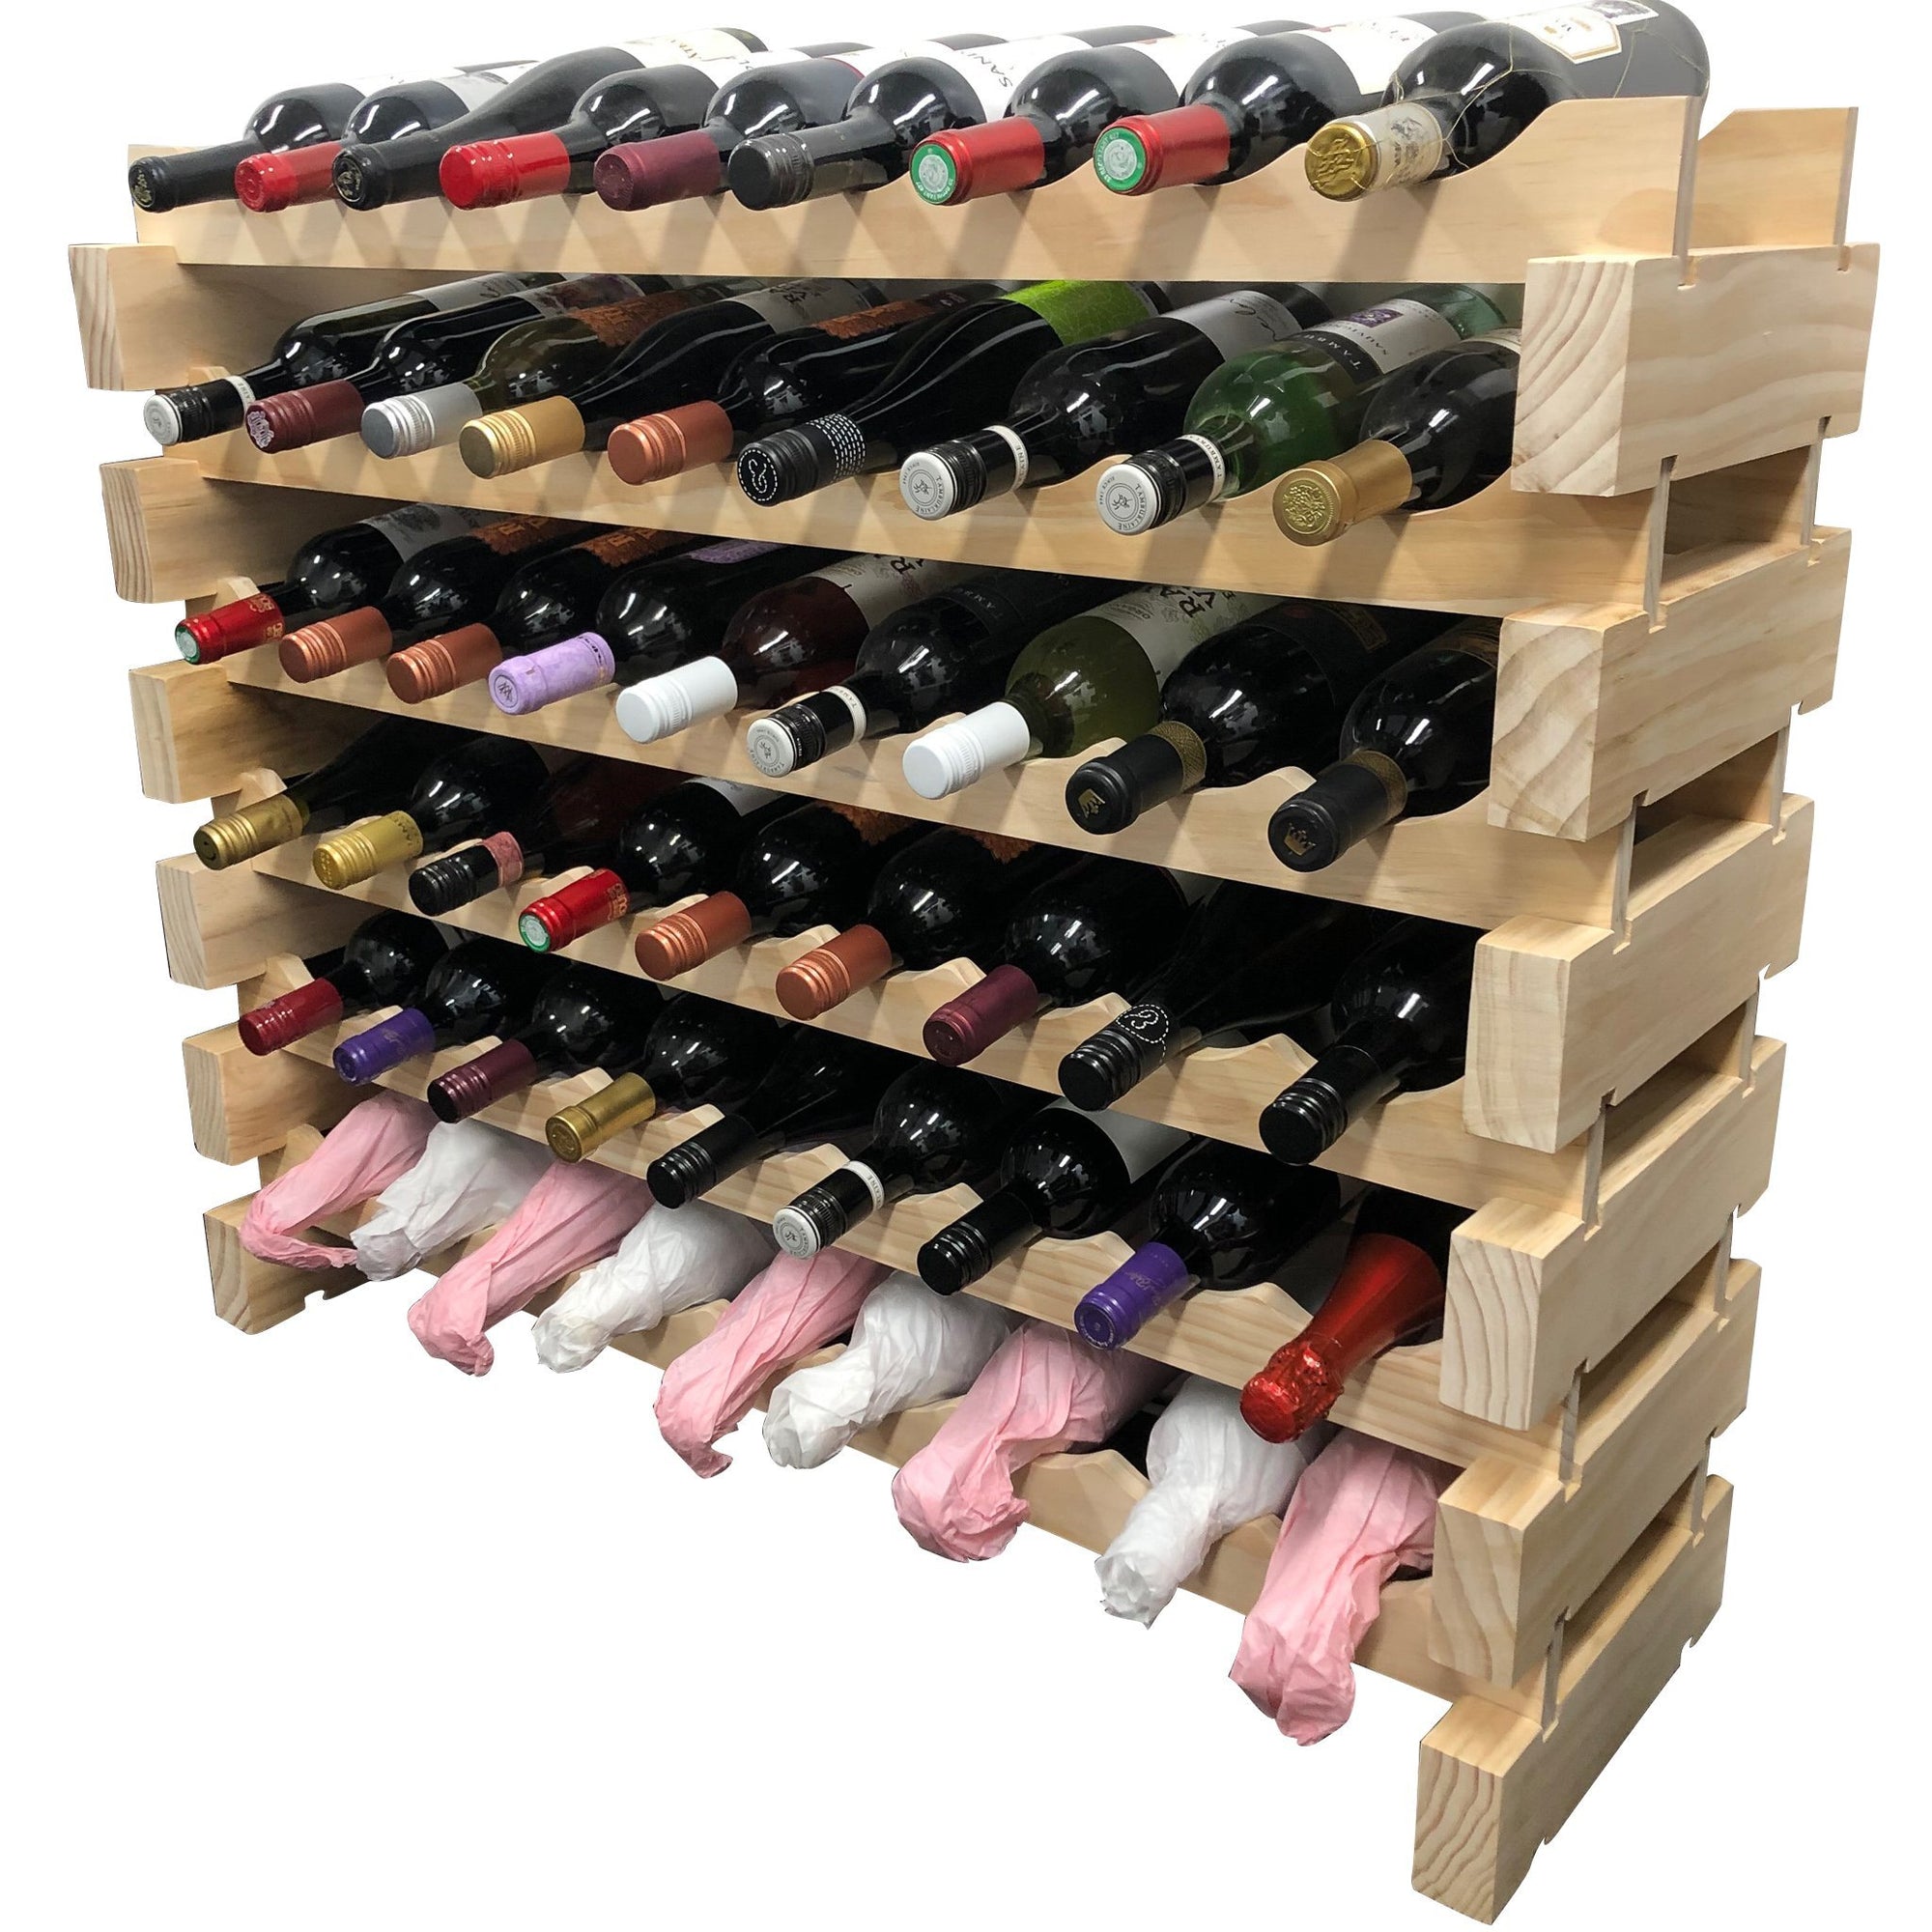 54 Bottle Modular Wine Rack Kit (9 Bottles Wide X 6 Bottles High) - Wine Stash USA